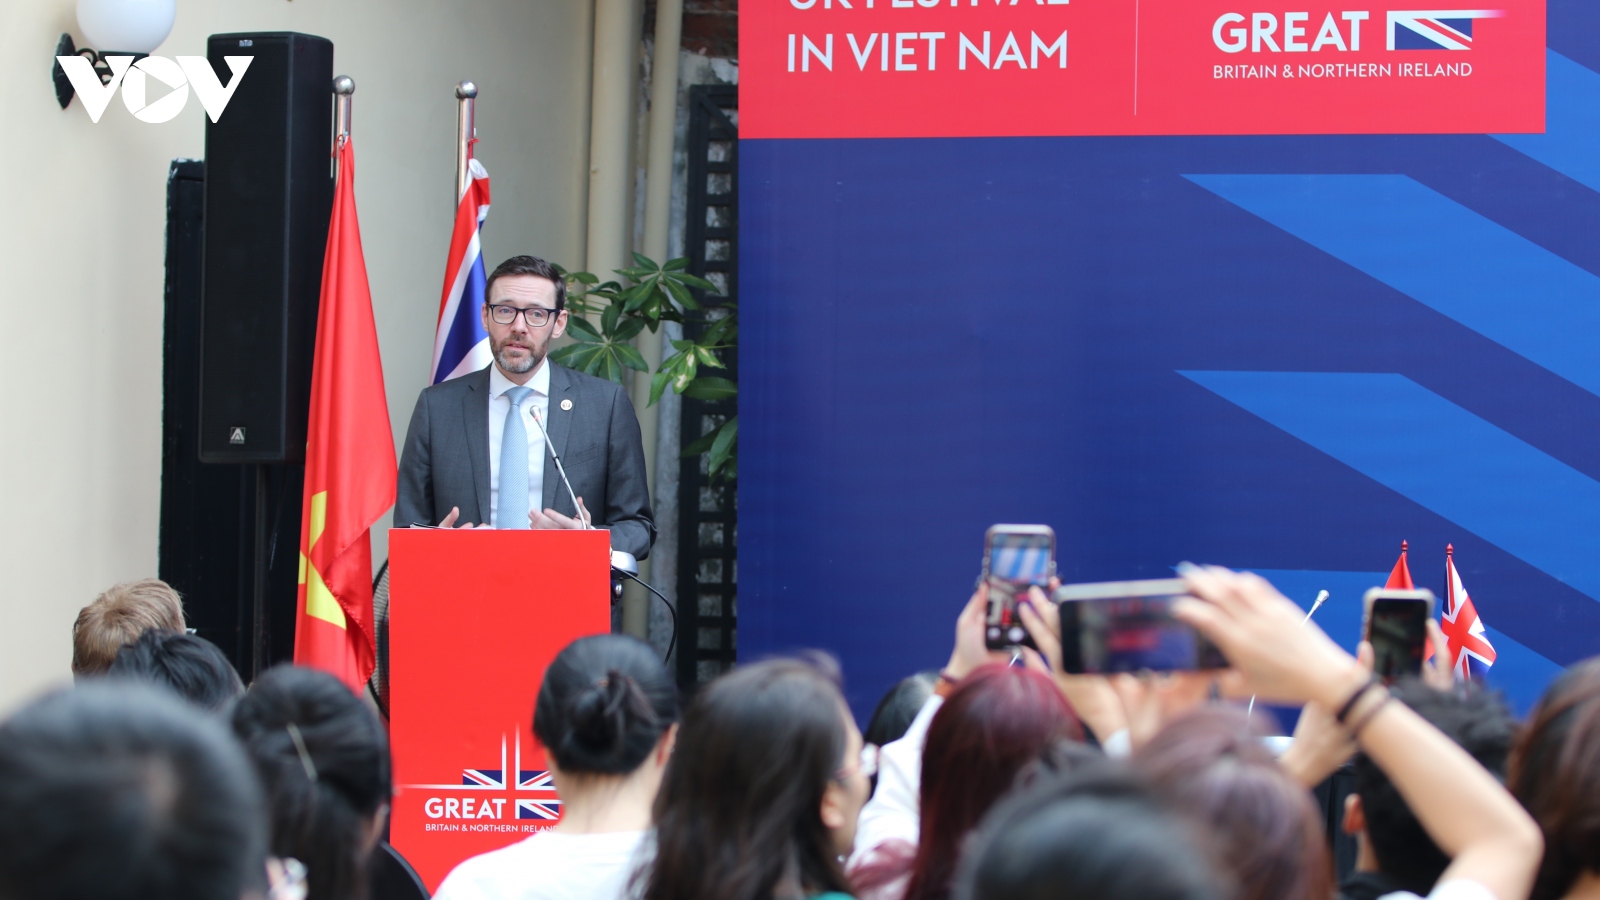 Anh cam kết hợp tác với Việt Nam trong giải quyết các thách thức toàn cầu